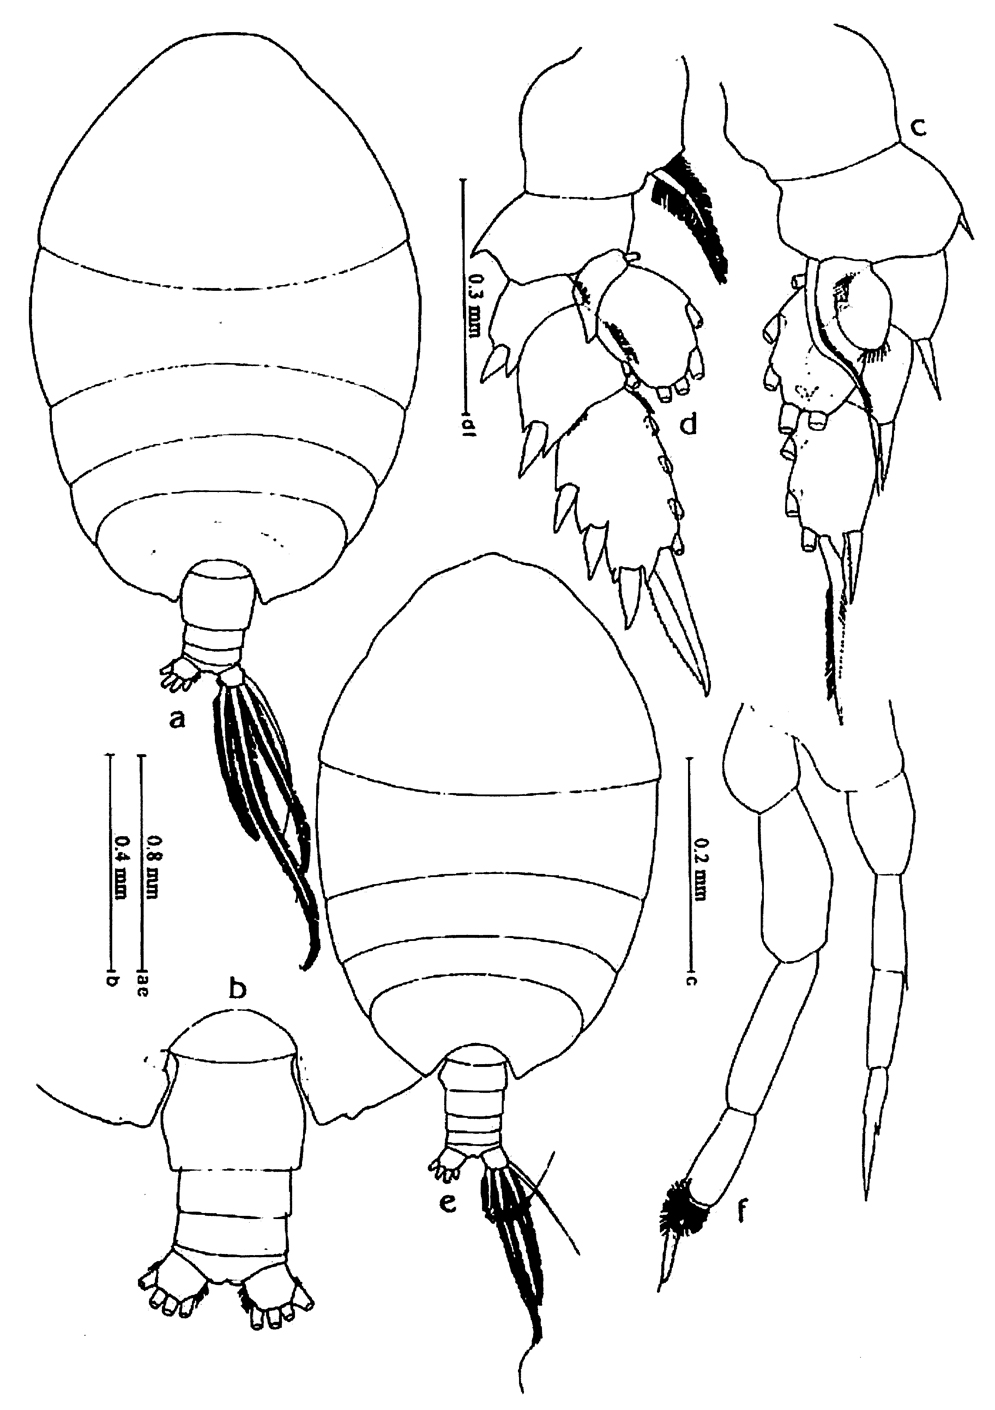 Espce Phaenna spinifera - Planche 37 de figures morphologiques